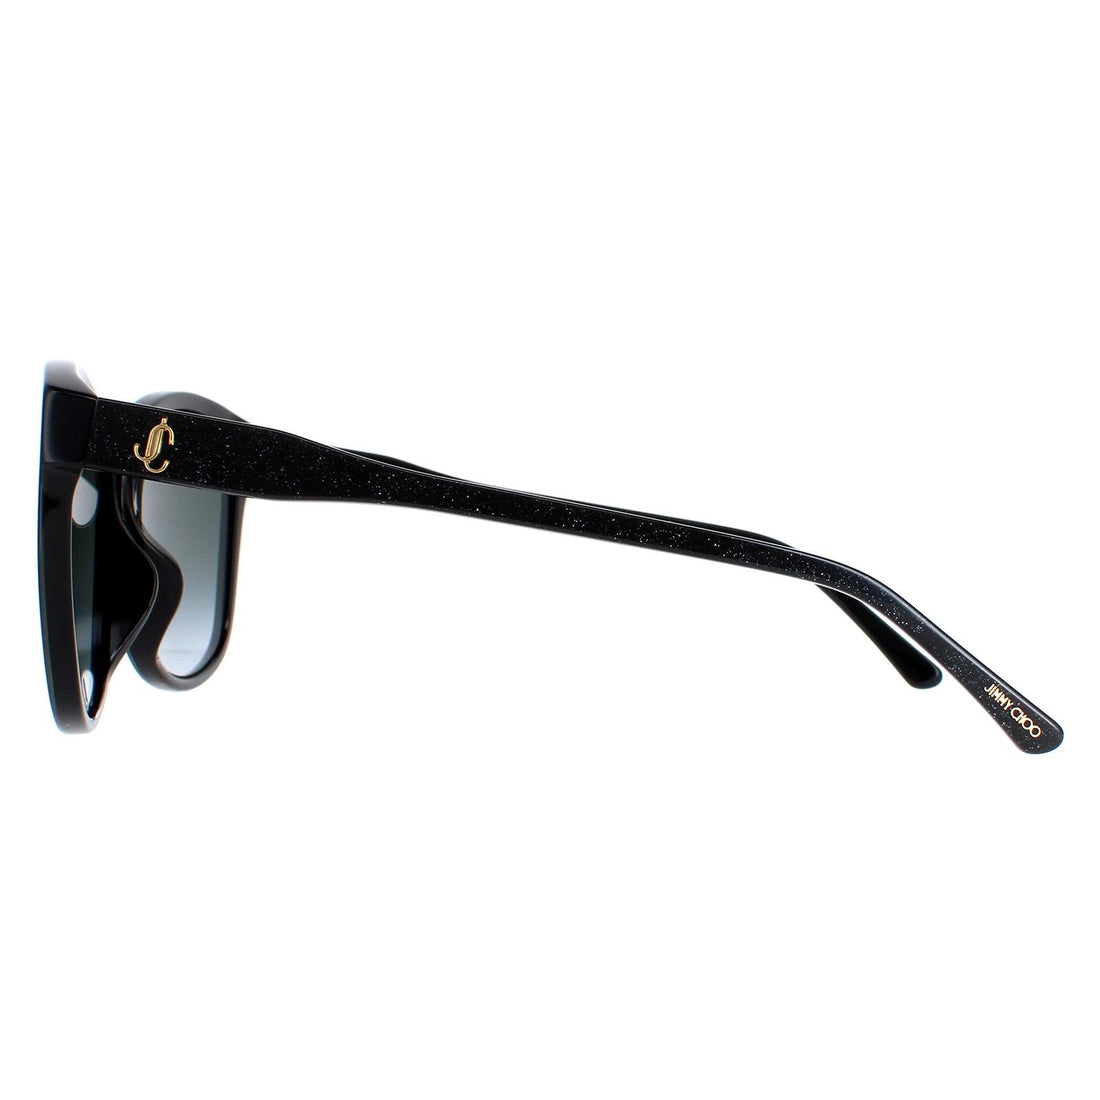 Jimmy Choo Sunglasses Lidie/F/SK 807/9O Black Grey Gradient